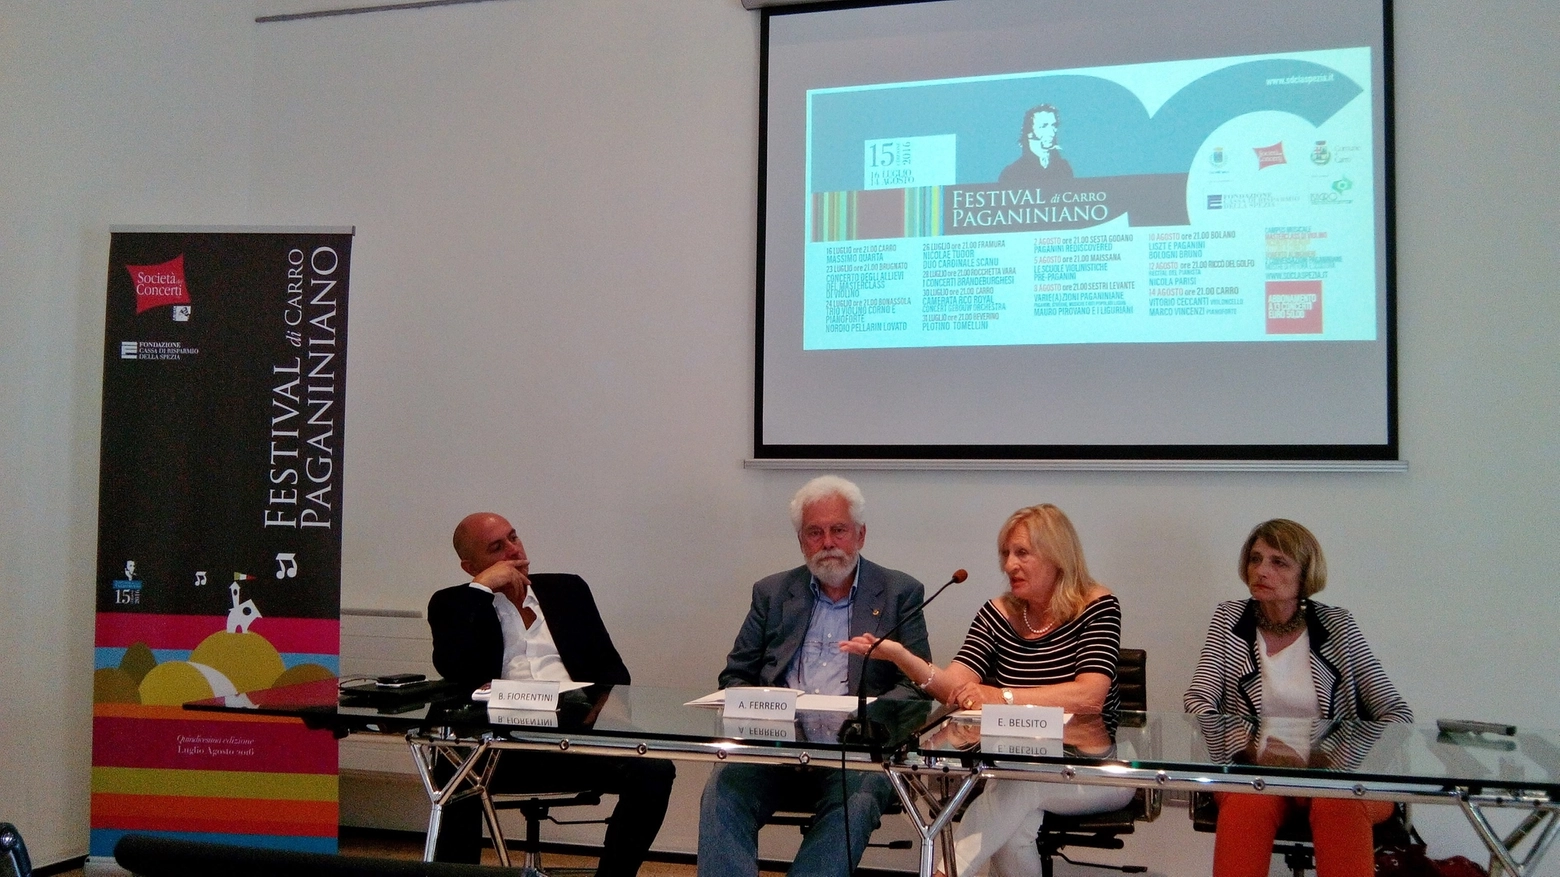 Presentazione in Fondazione Carispezia: da sinistra Fiorentini, Ferrero, Belsito e Amari